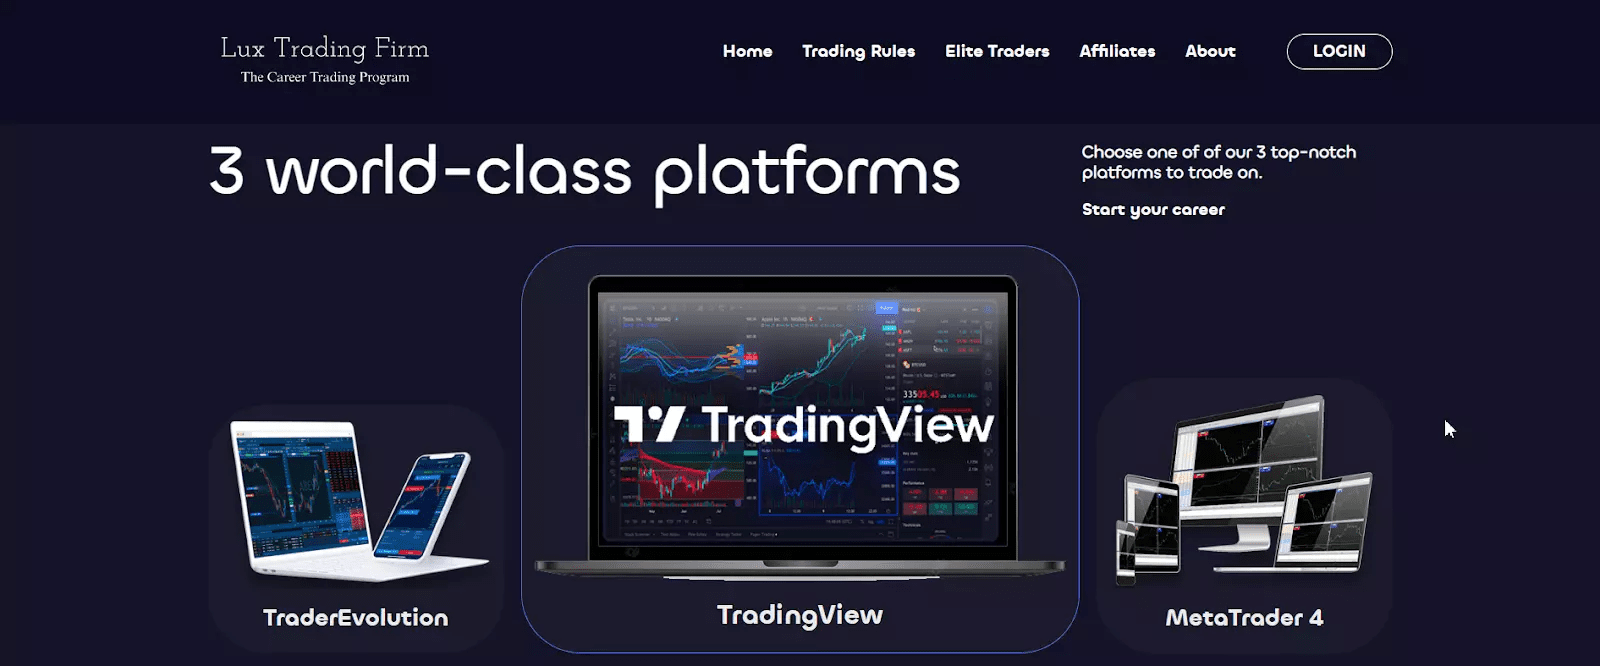 Lux Trading Firm की समीक्षा - एक ट्रेडिंग प्लेटफॉर्म चुनें